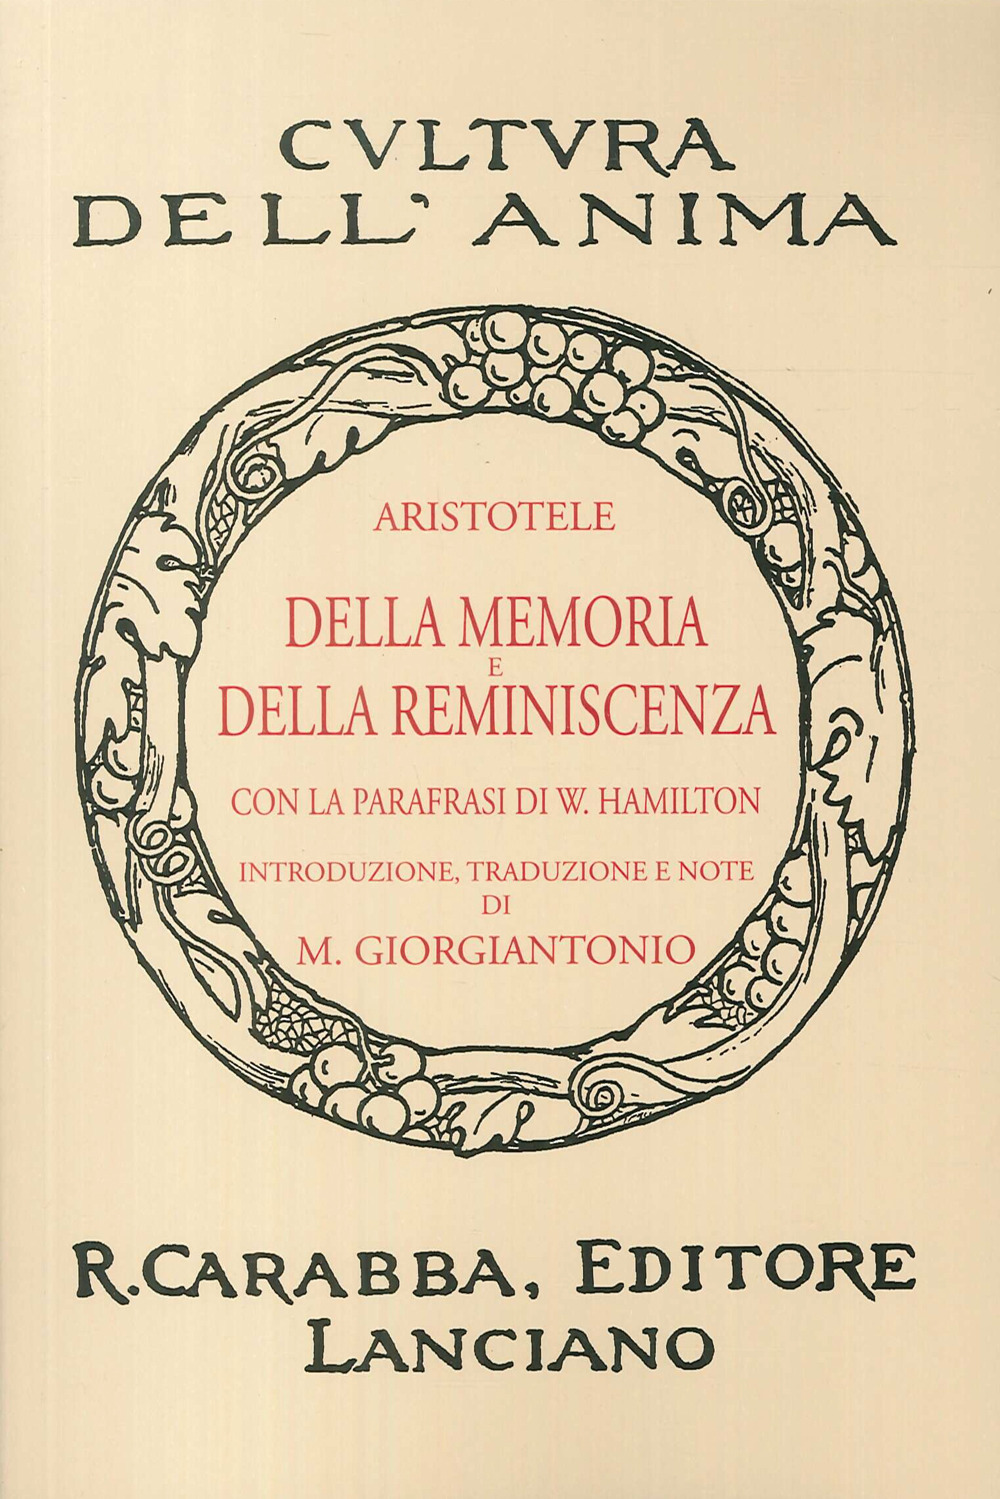 Della memoria e della reminiscenza (rist. anast. 1938). Ediz. in facsimile